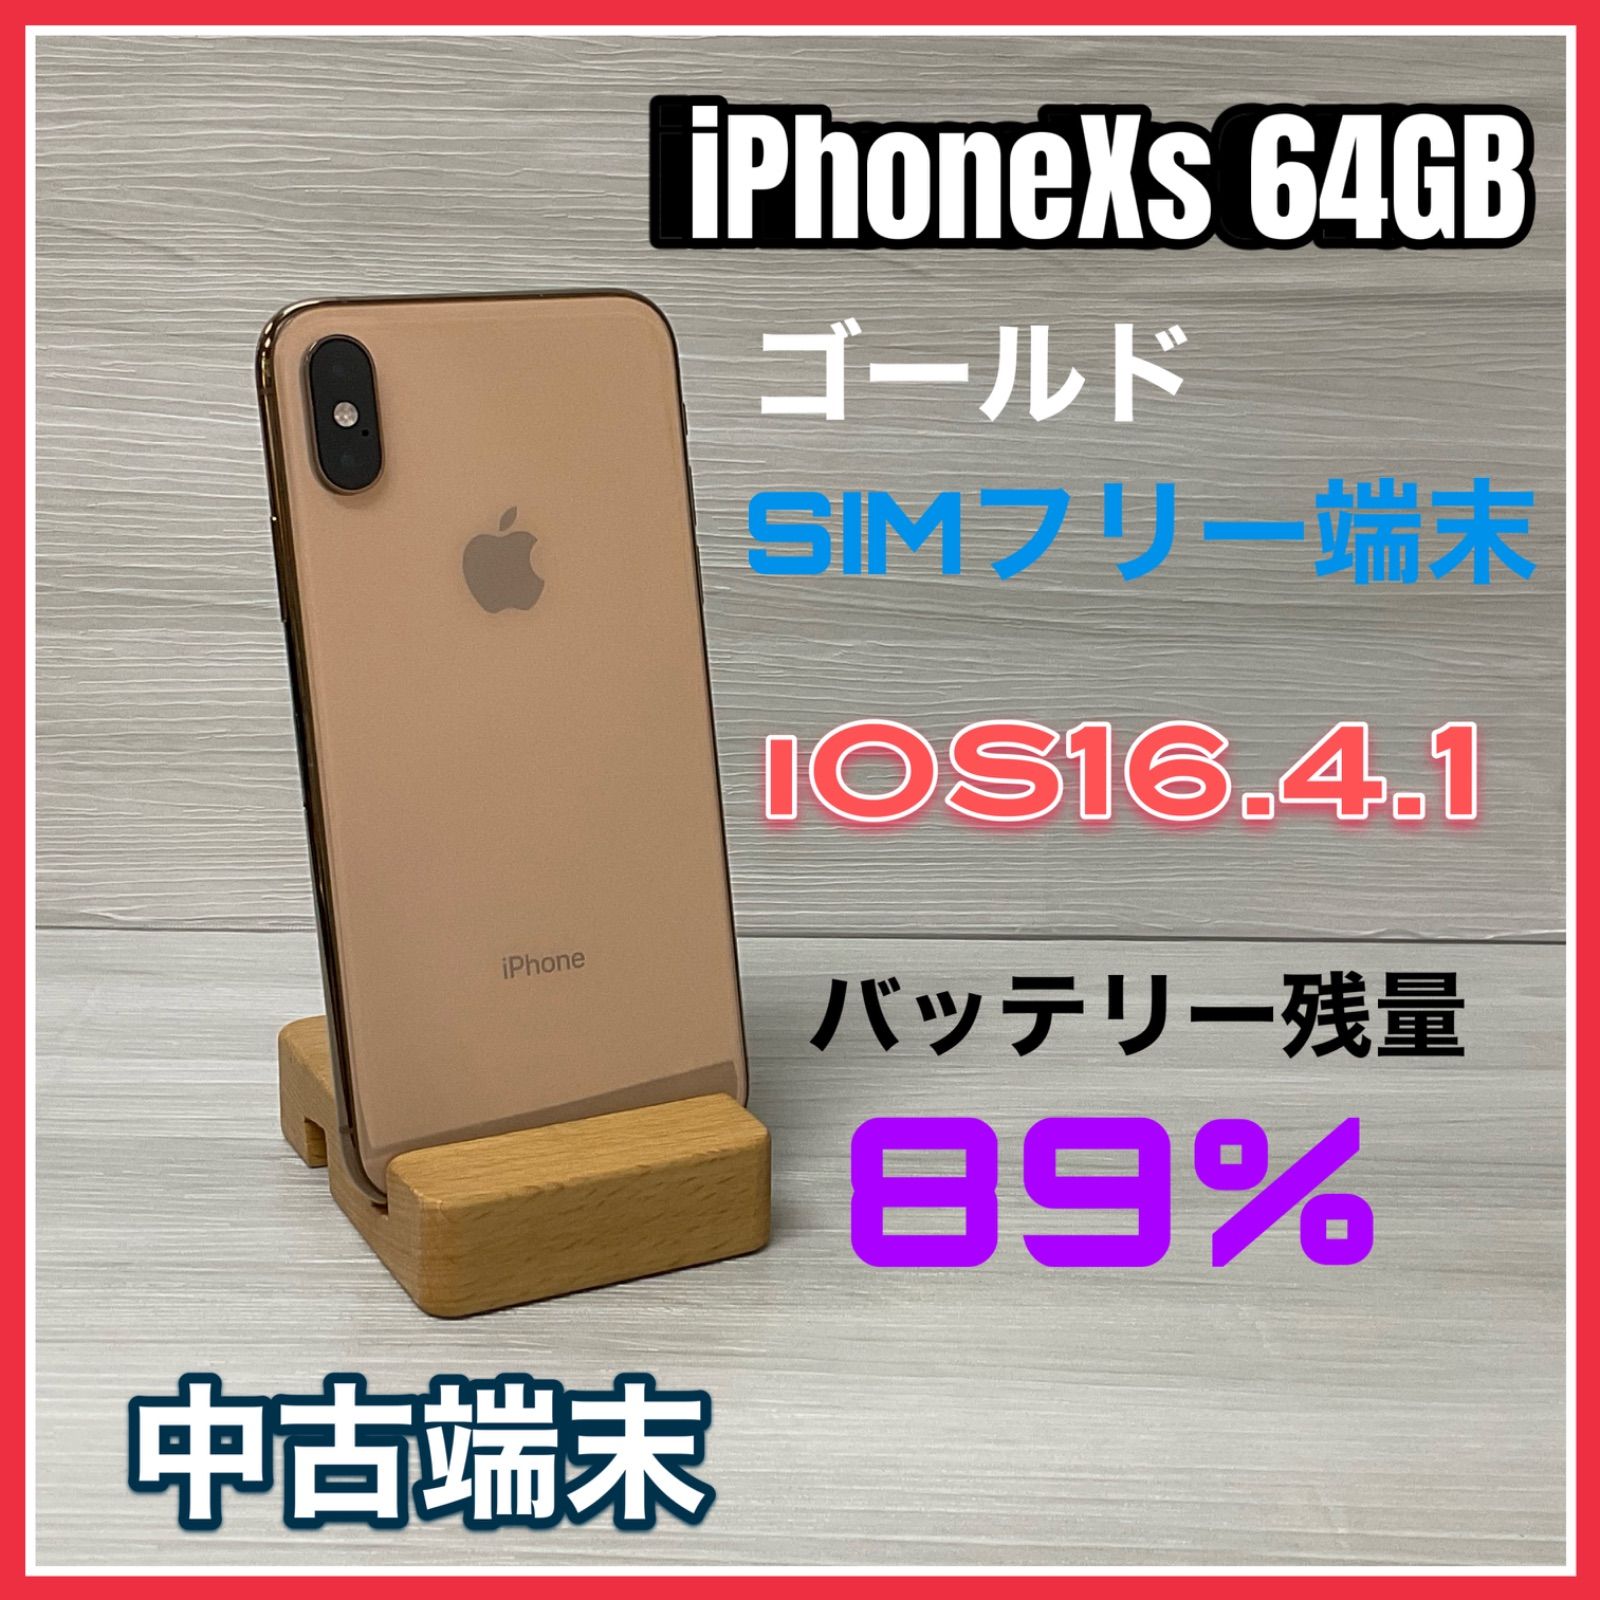 iPhoneXs 64GB <ゴールド> 【中古】- SIMロック解除済 - - テレライン